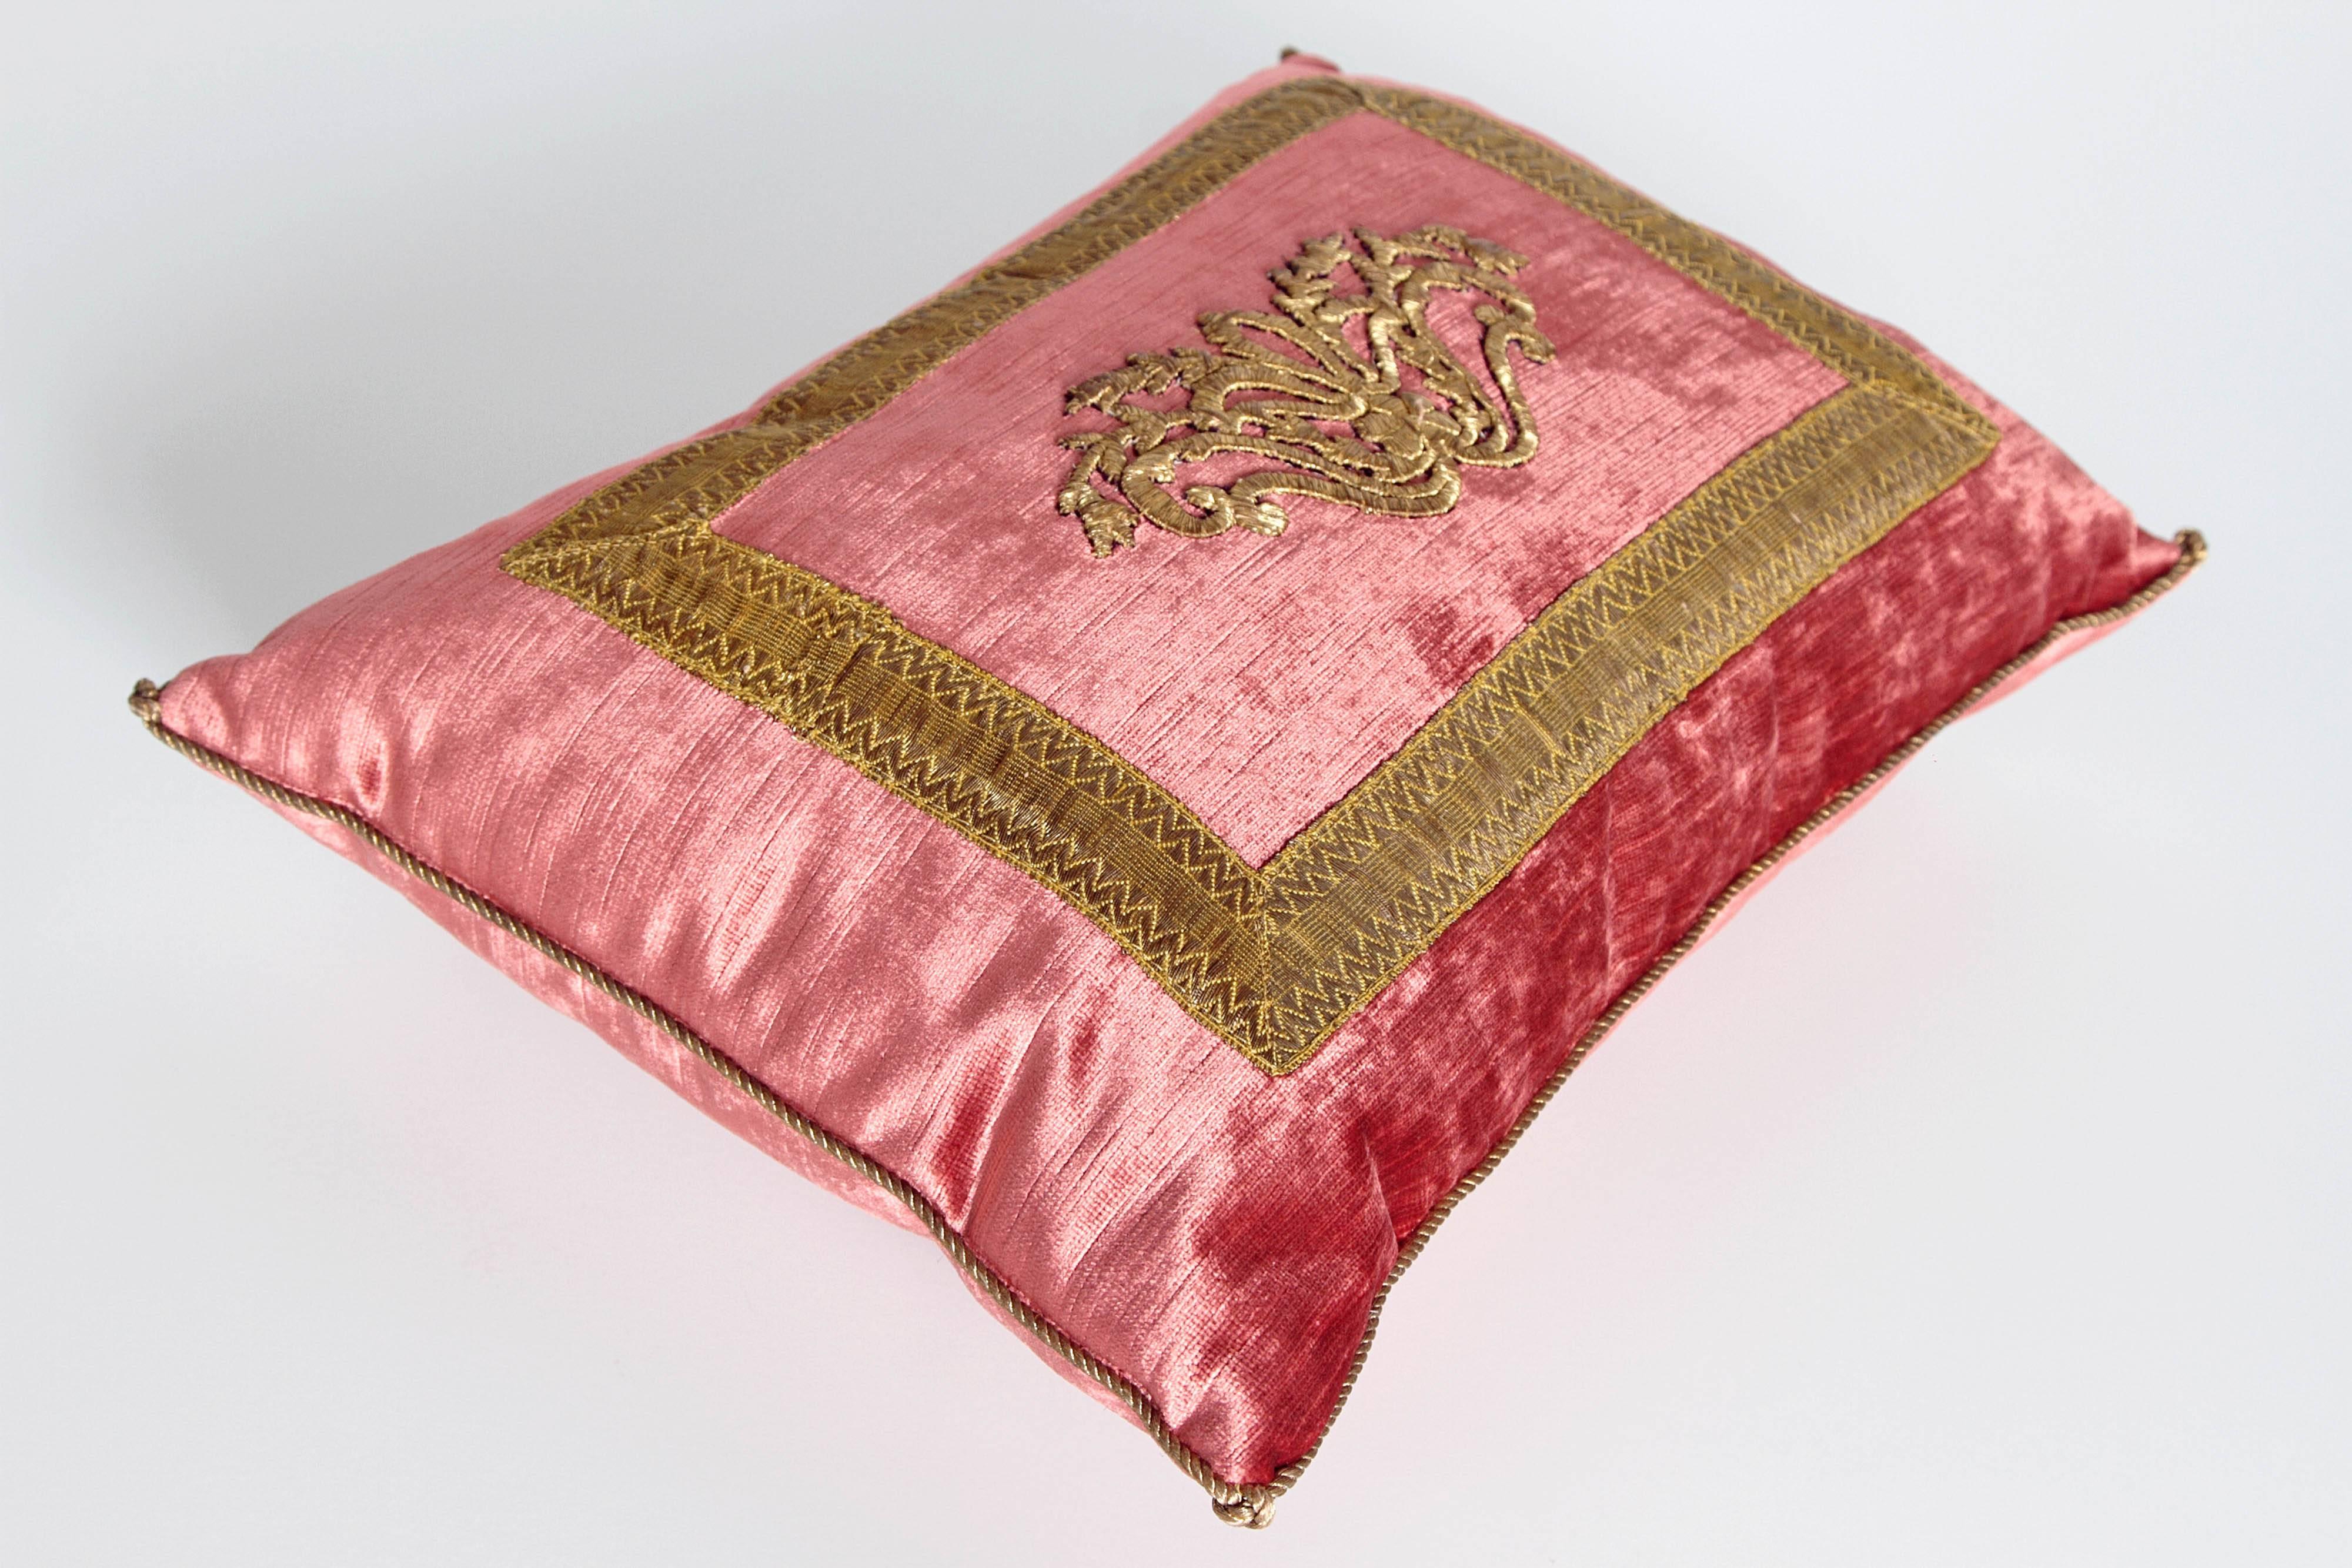 Contemporary Antique Textile Pillow by Rebecca Vizard of B. Viz Design